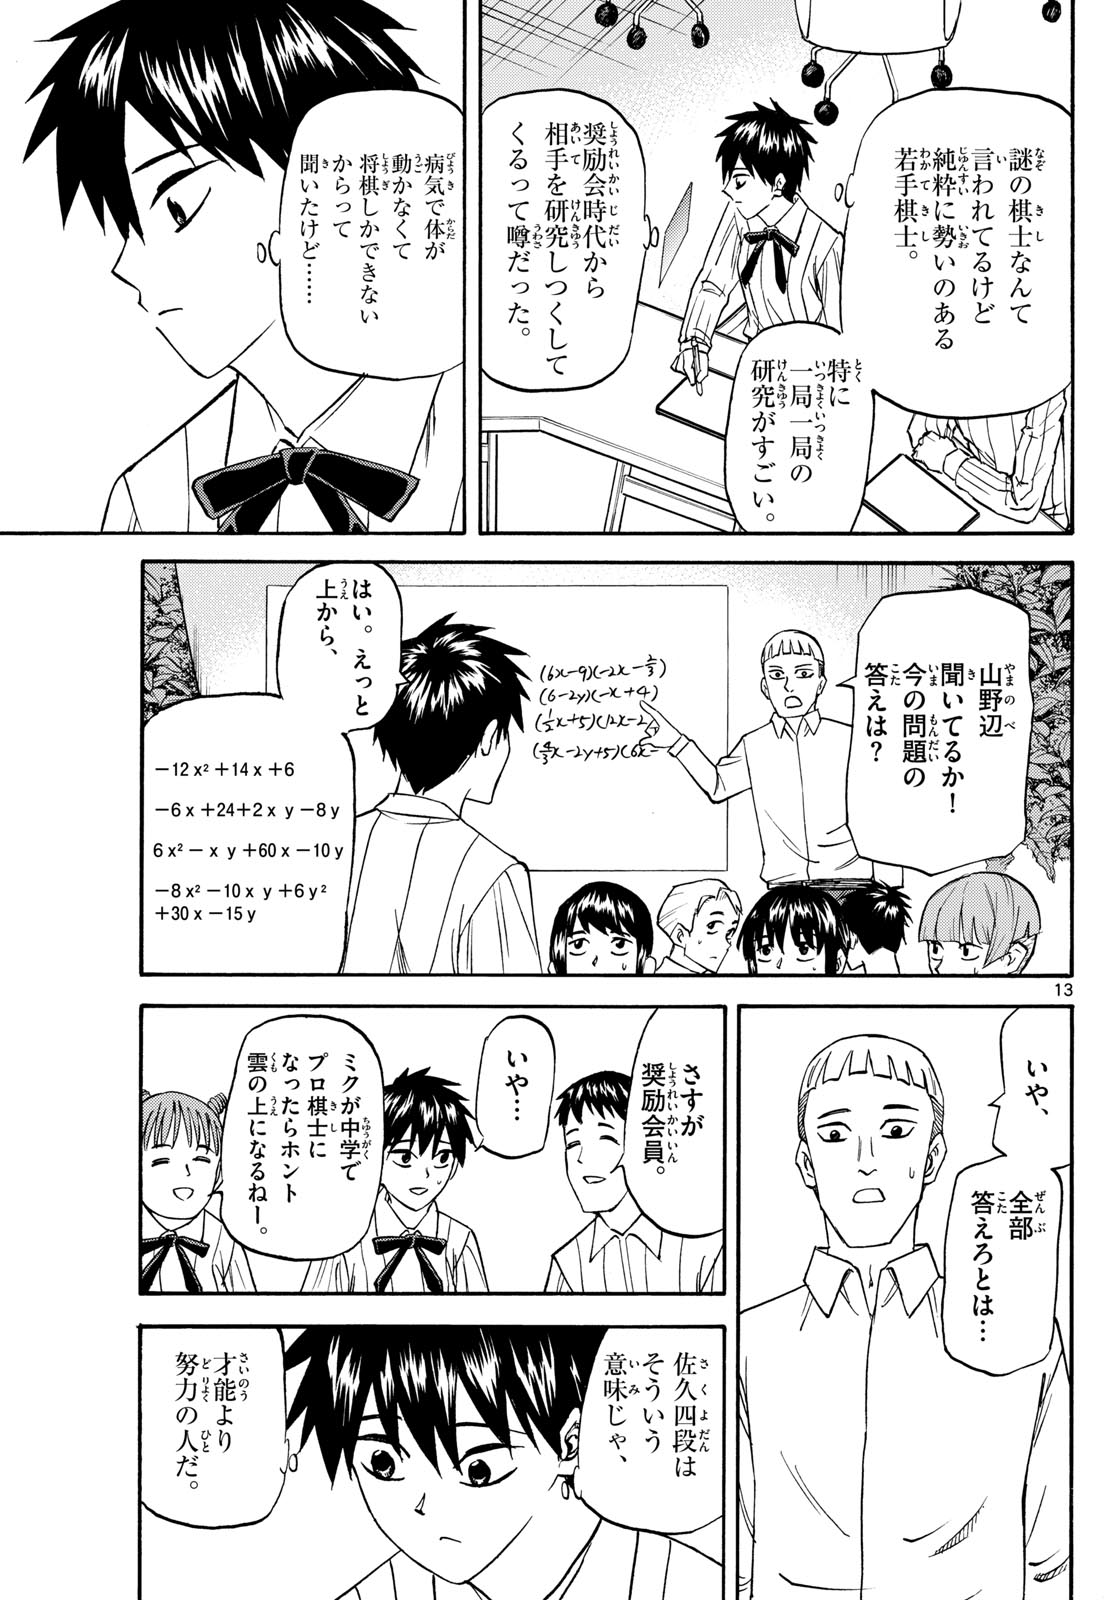 Tatsu to Ichigo - Chapter 191 - Page 13